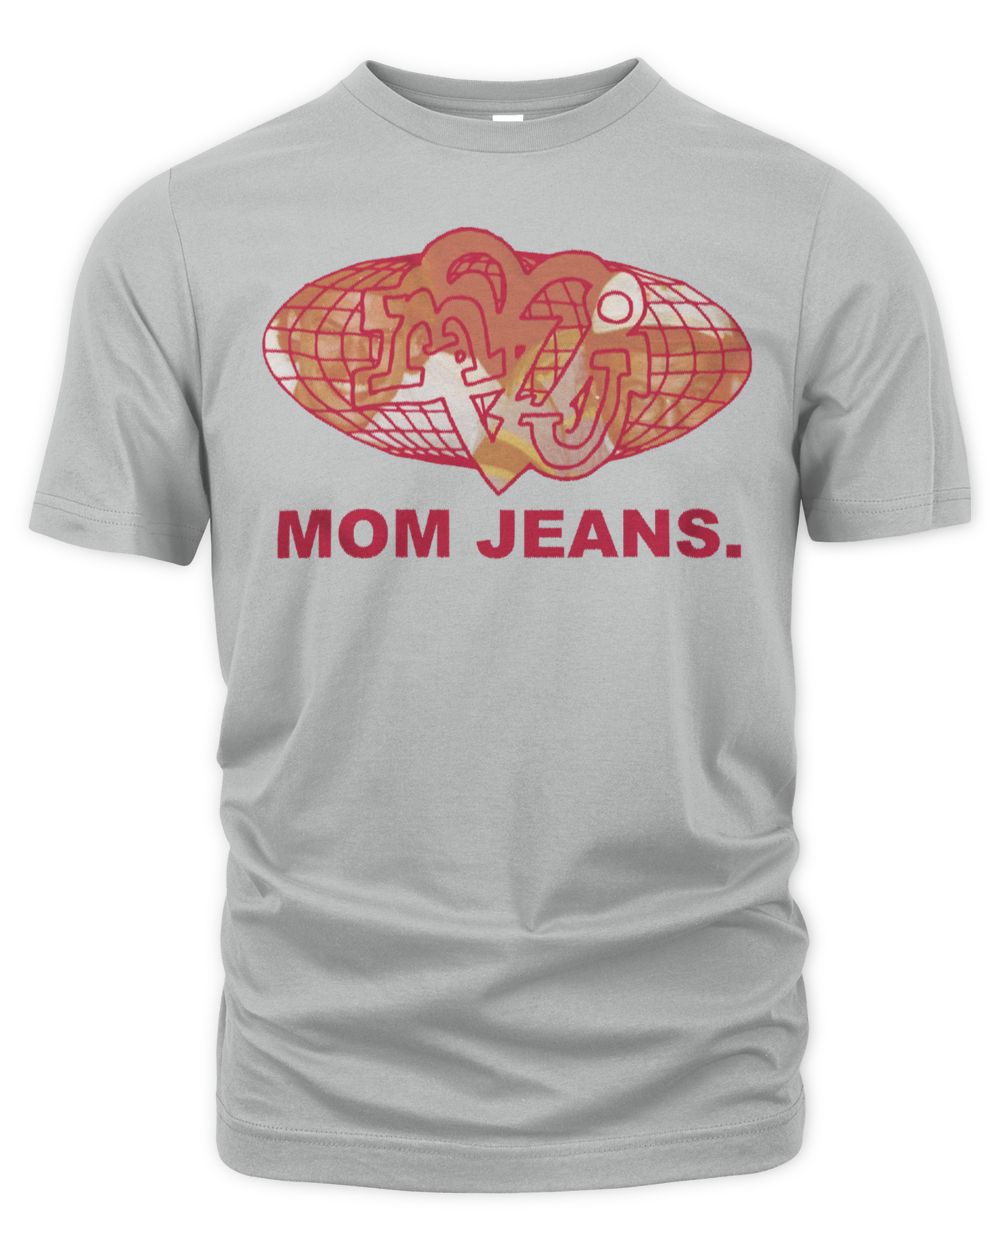 Mom Jeans Merch Super Grass Shirt Unisex Premium T-Shirt silver 